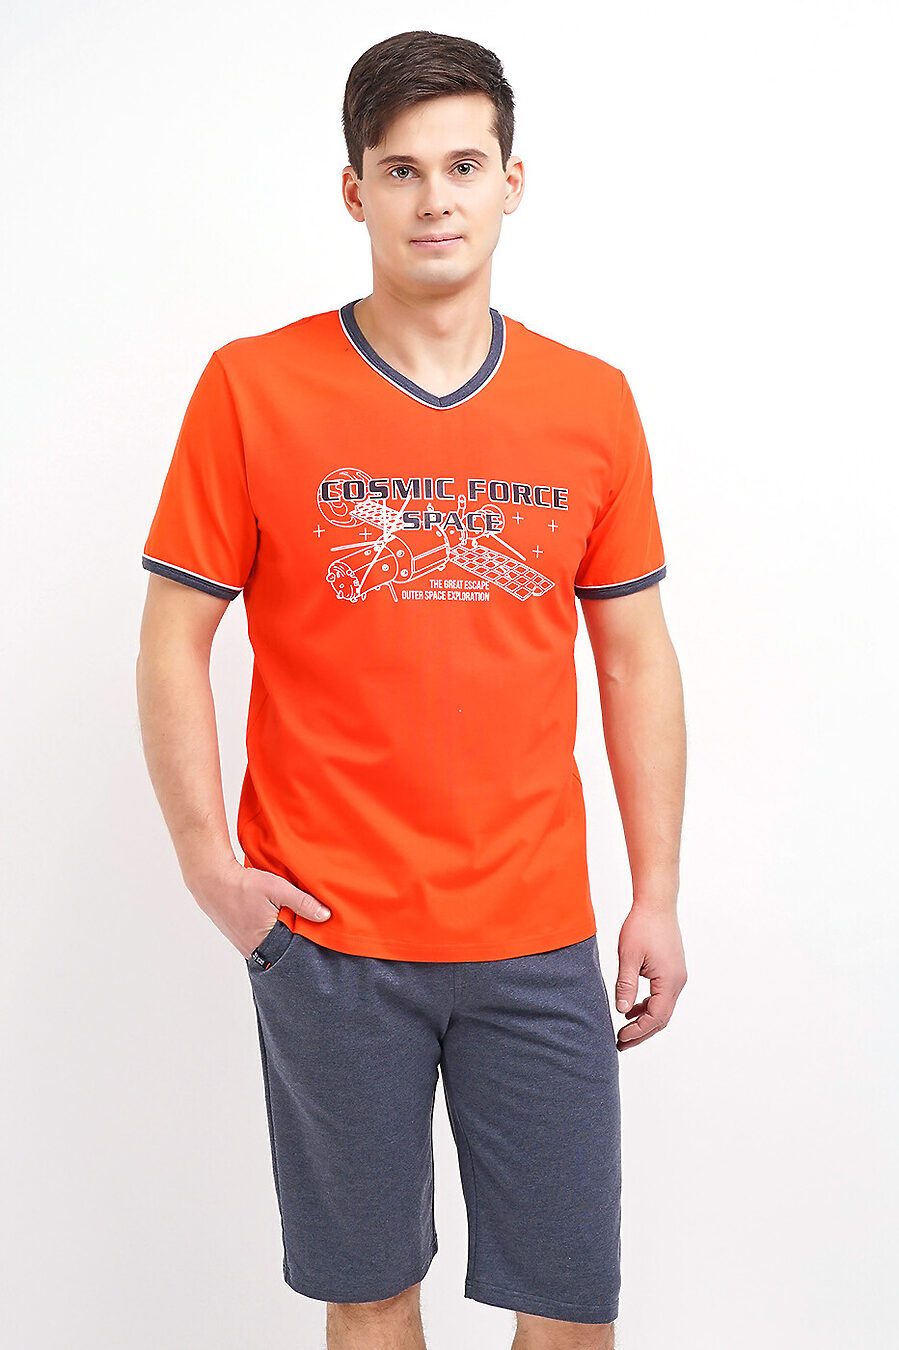 Комплект (шорты+футболка) для мужчин CLEVER 197296 купить оптом от производителя. Совместная покупка мужской одежды в OptMoyo